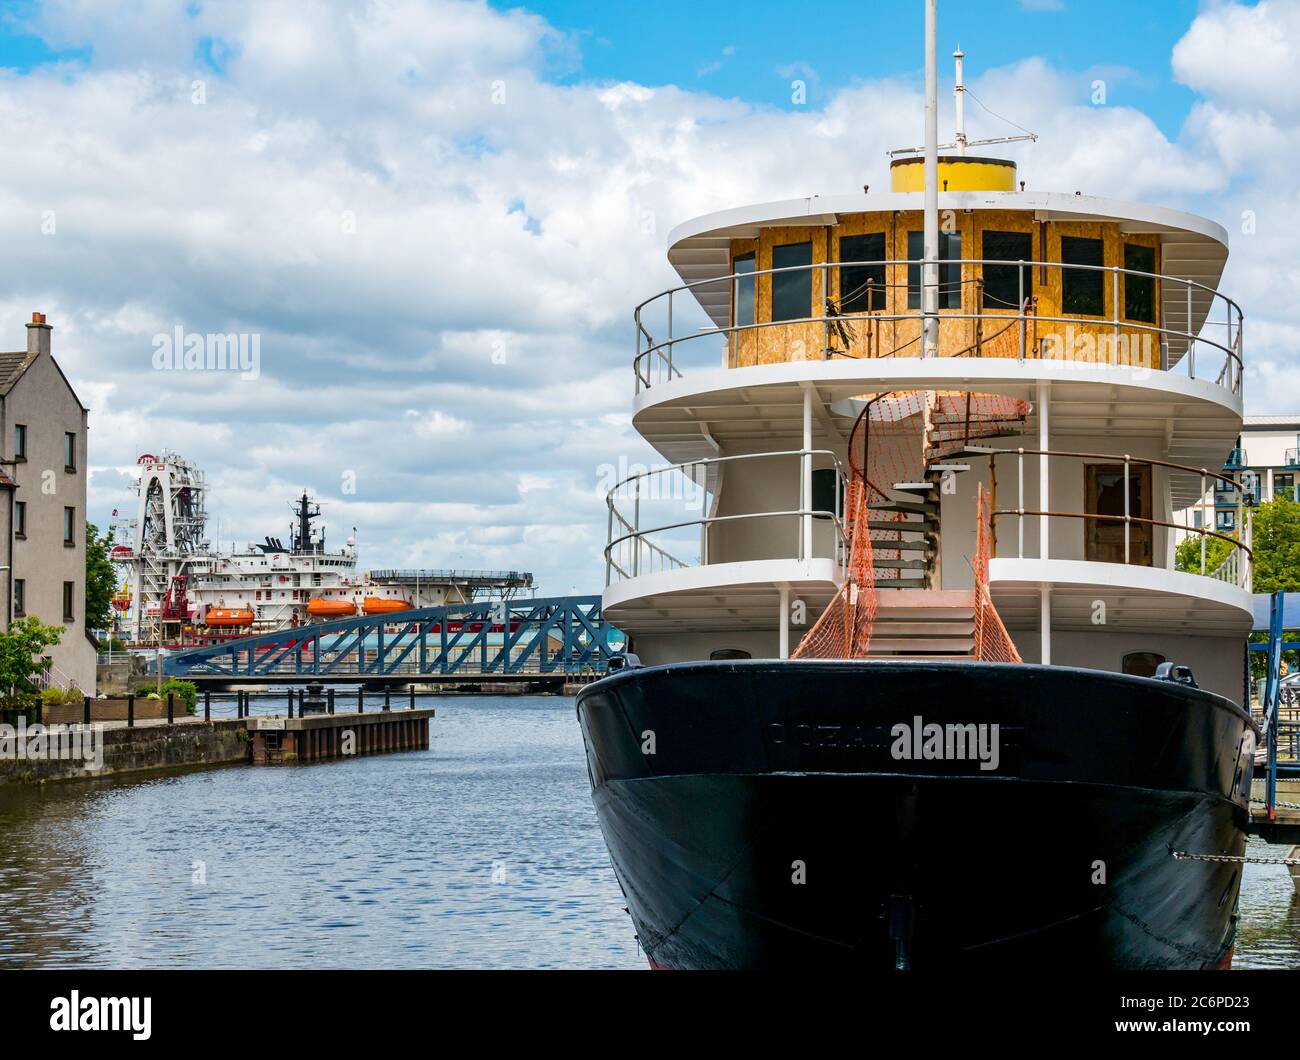 Ocean Mist, navire en cours de conversion en hôtel flottant sur l'eau de Leith, la rive, Leith, Édimbourg, Écosse, Royaume-Uni Banque D'Images